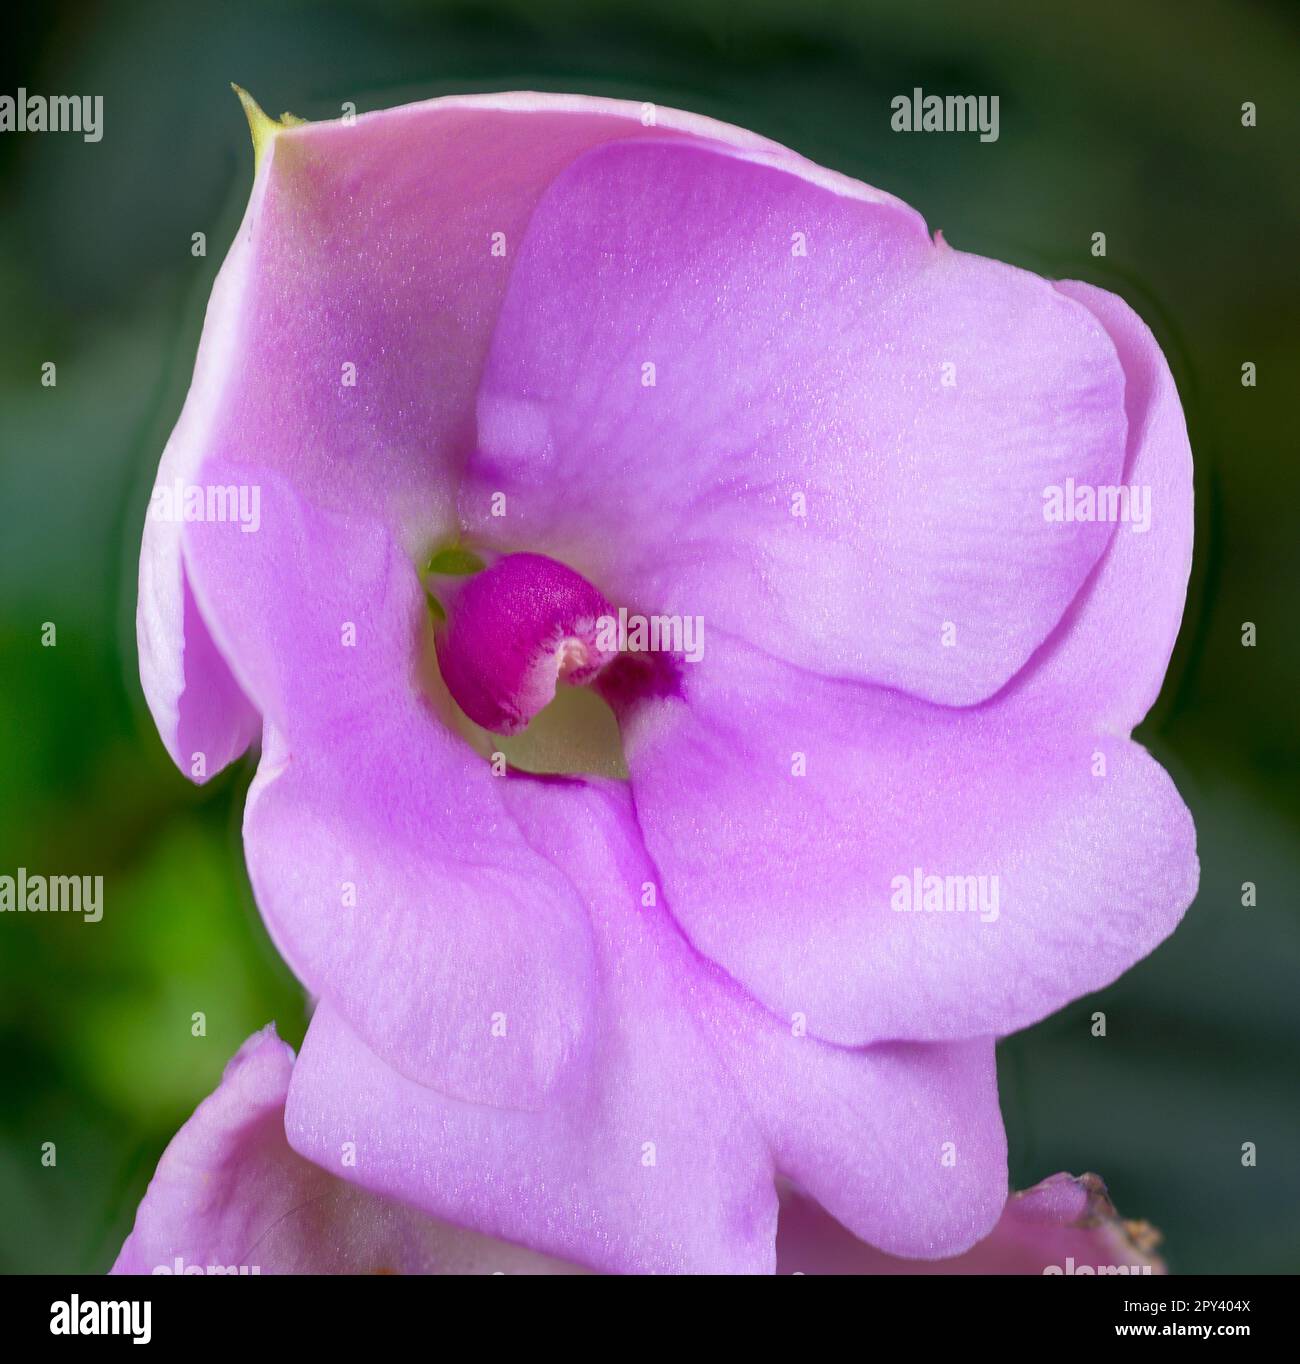 Immagine closeup di una singola fioritura rosa delle impatiens della Nuova Guinea (Impatiens hawkeri). Foto Stock